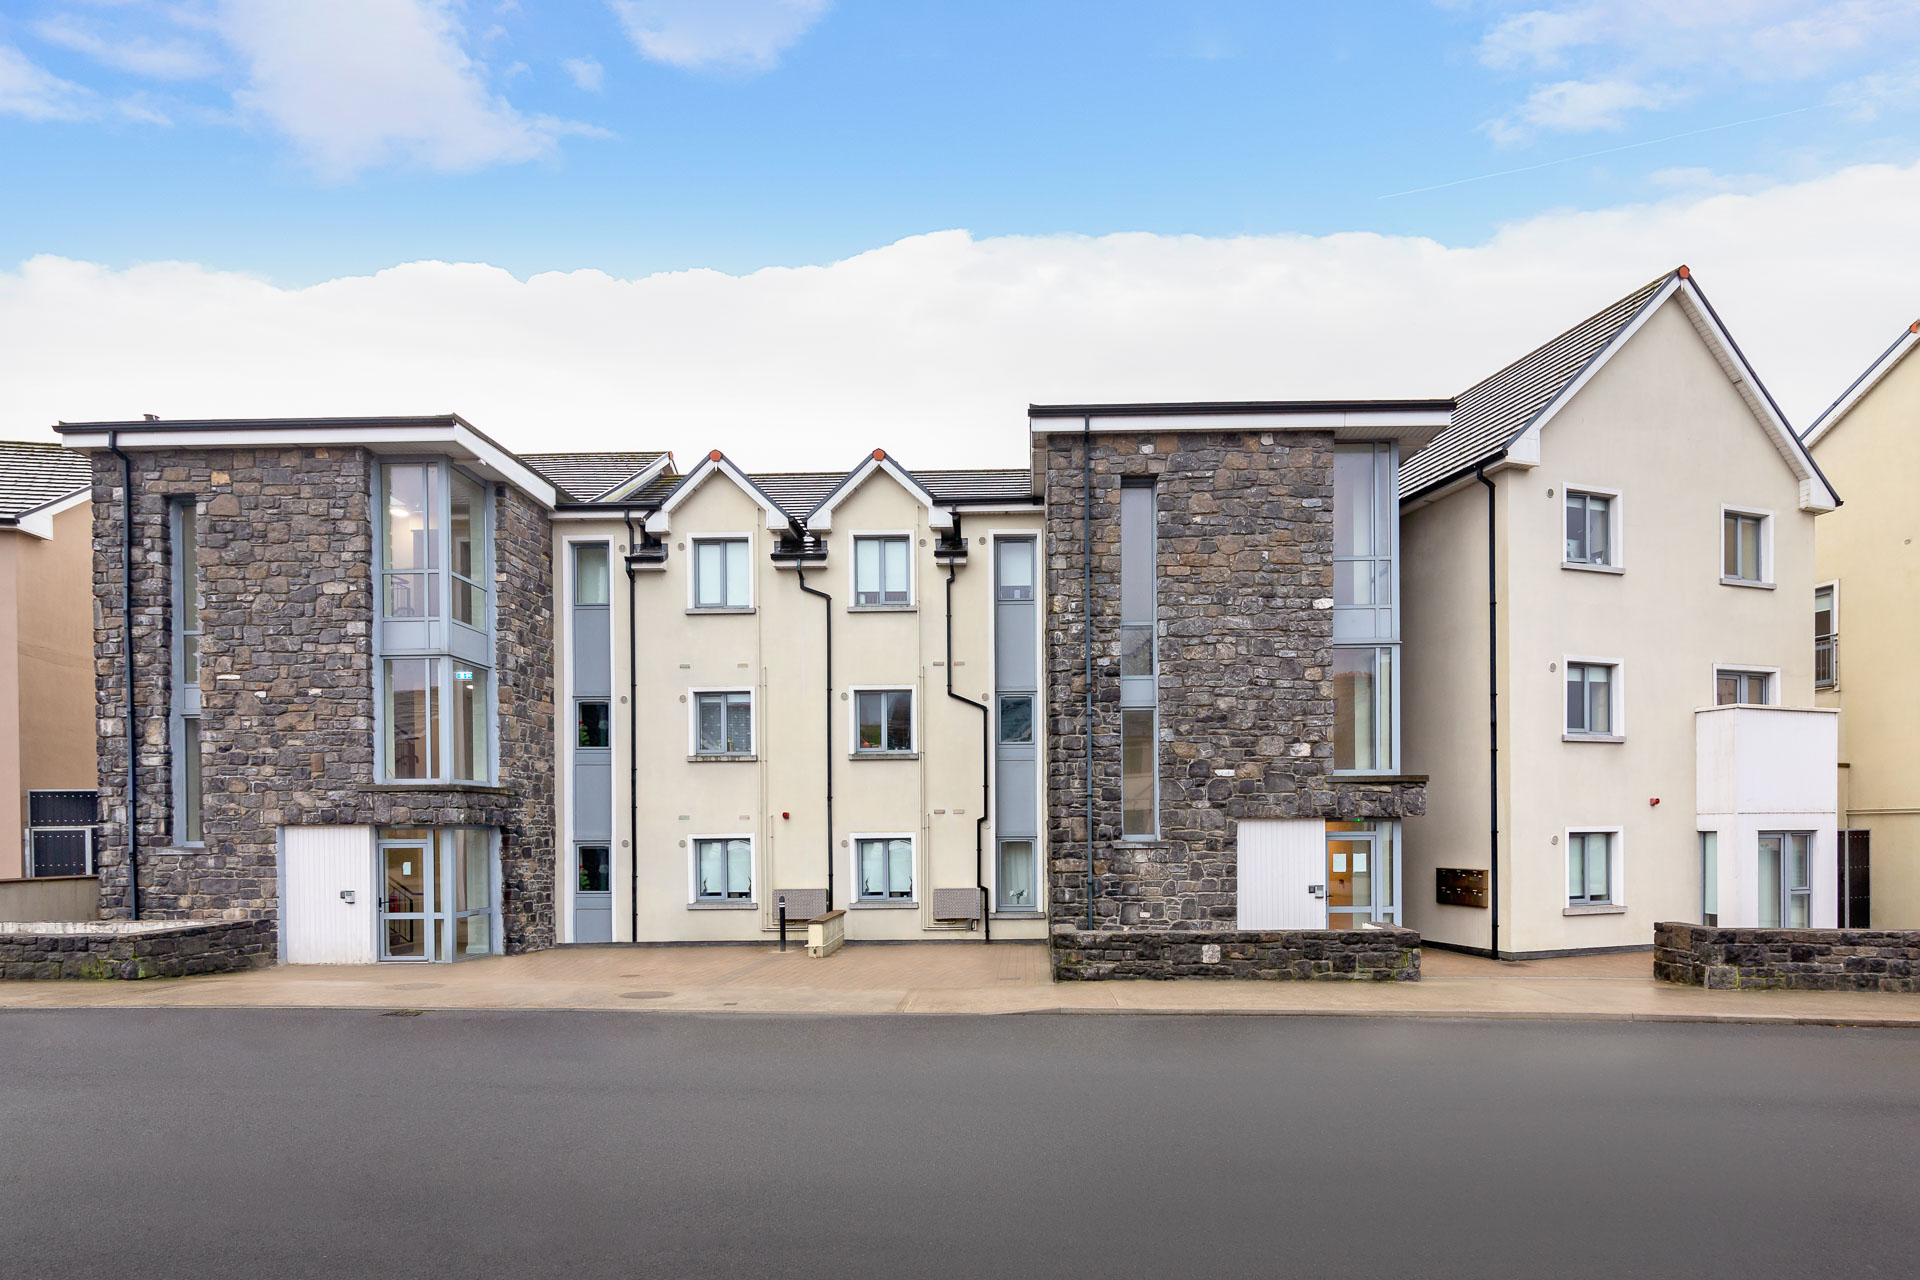 14 Apartments, Ballisodare Town Centre, Ballisodare, Co. Sligo, Ireland